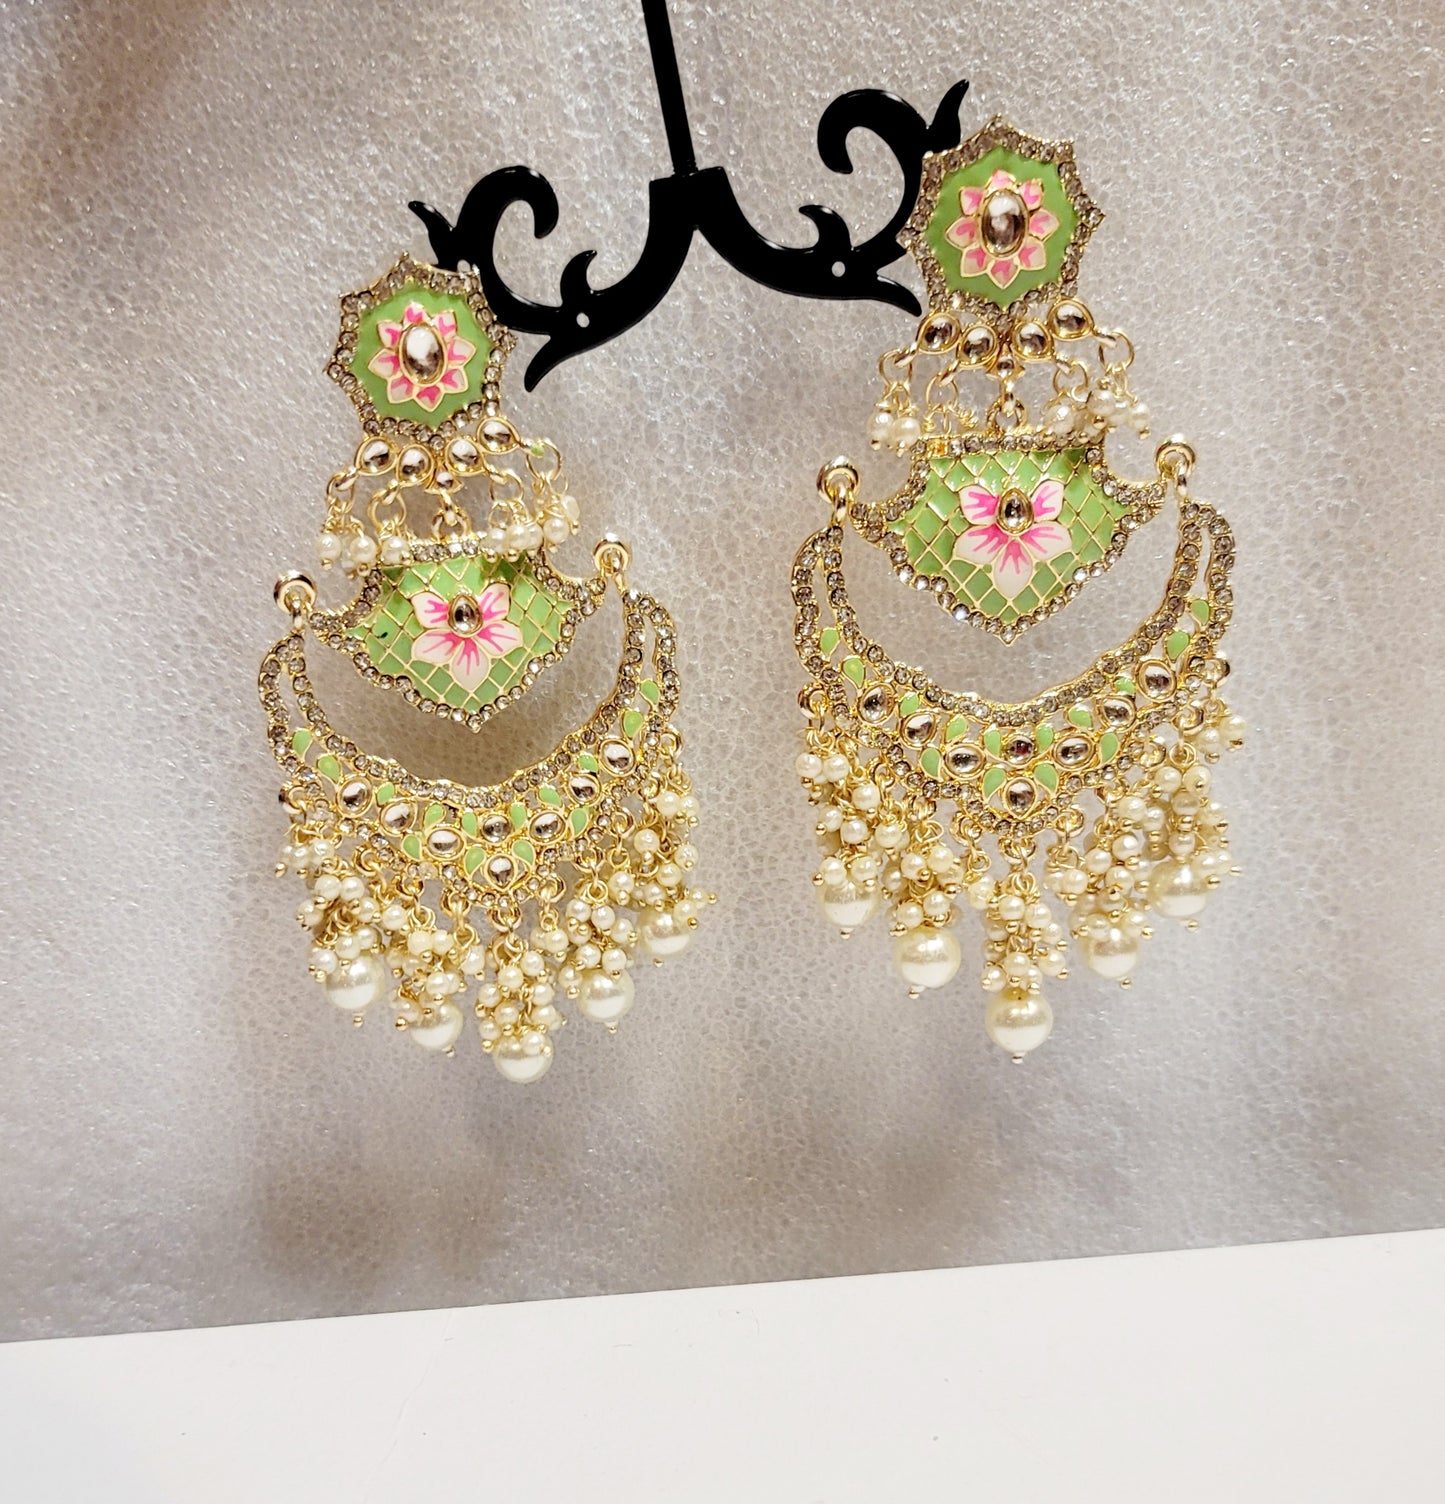 Pakistani Chandbali Meenakari earrings